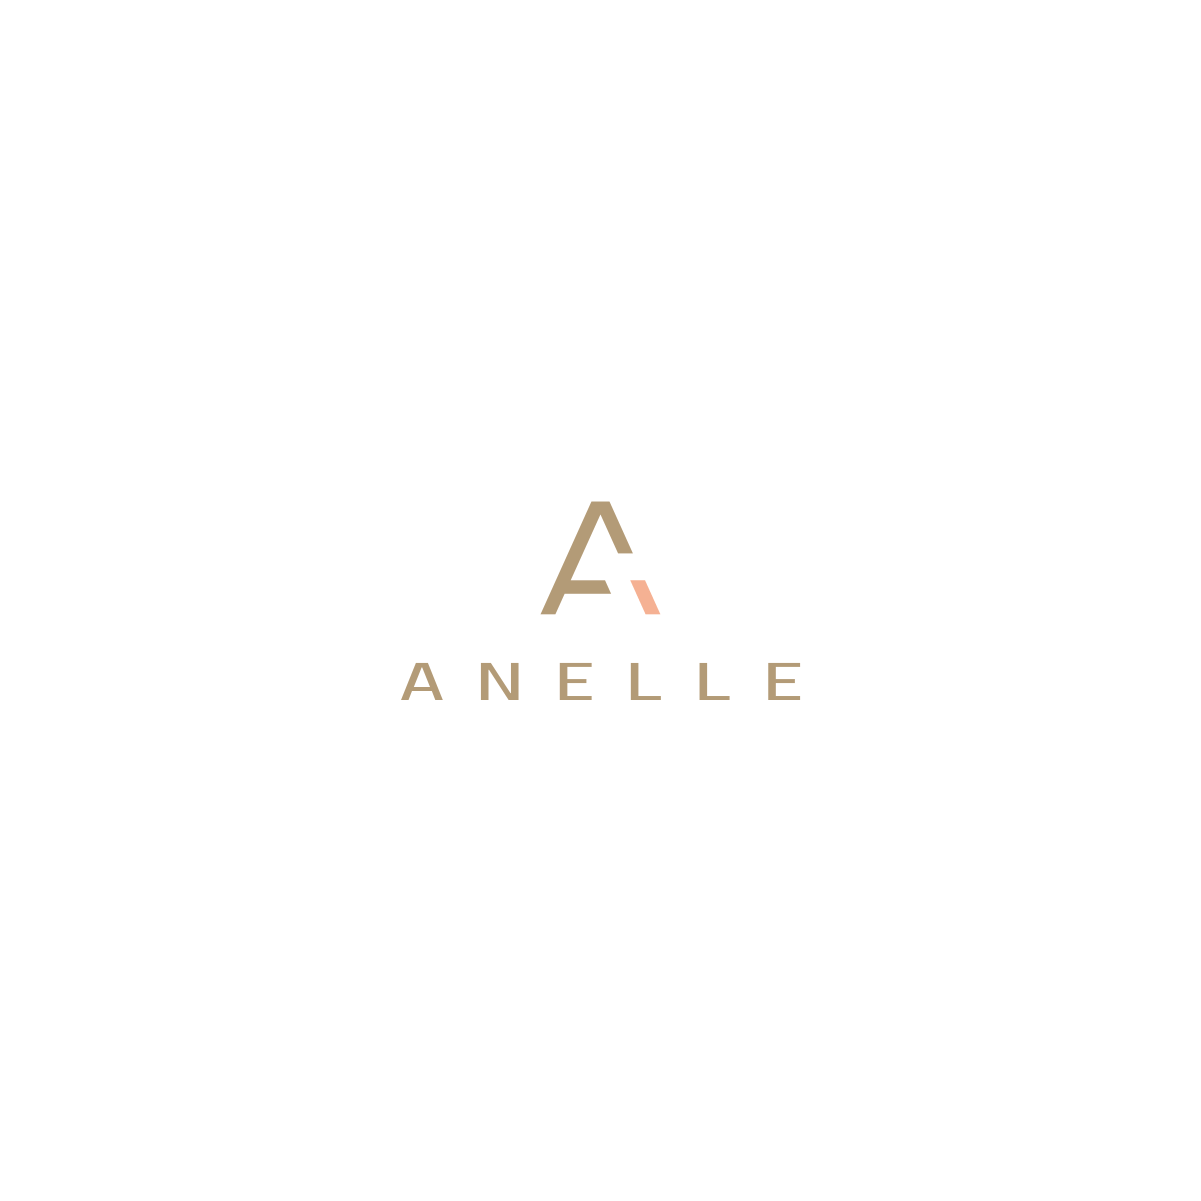 Gree Logo - Upmarket, Modern, Business Logo Design for Anelle by Gree™ | Design ...